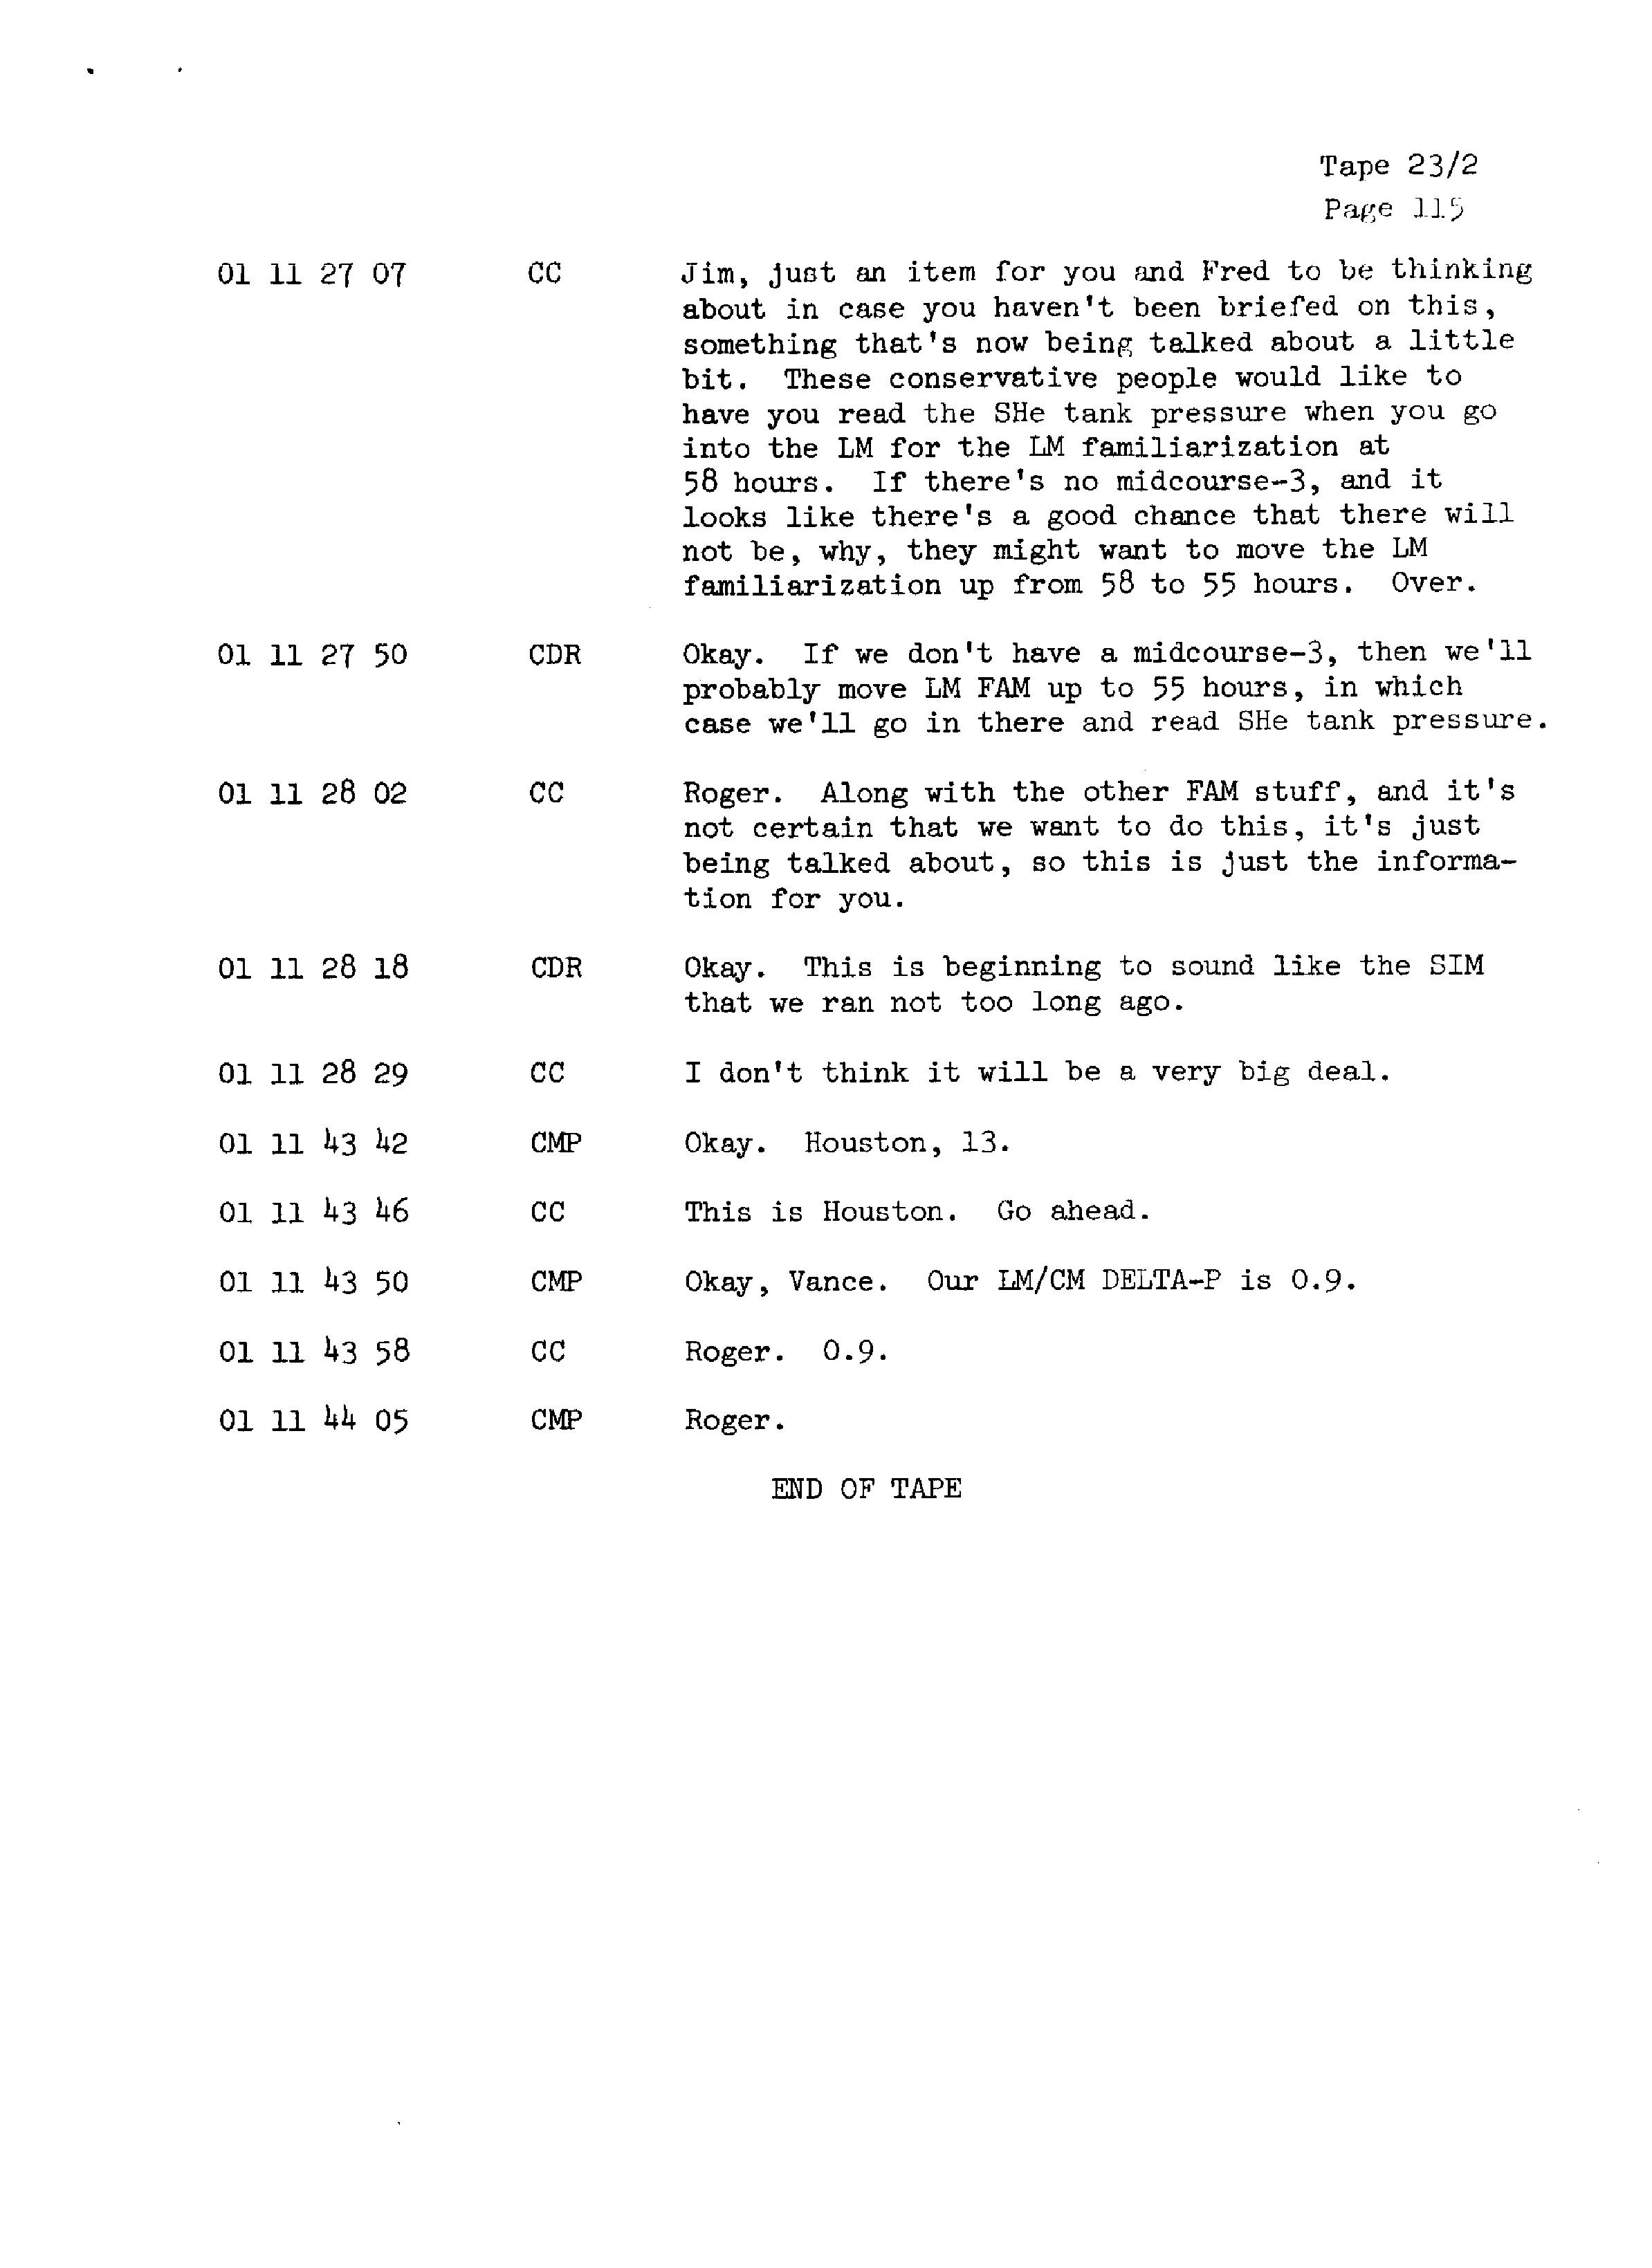 Page 122 of Apollo 13’s original transcript